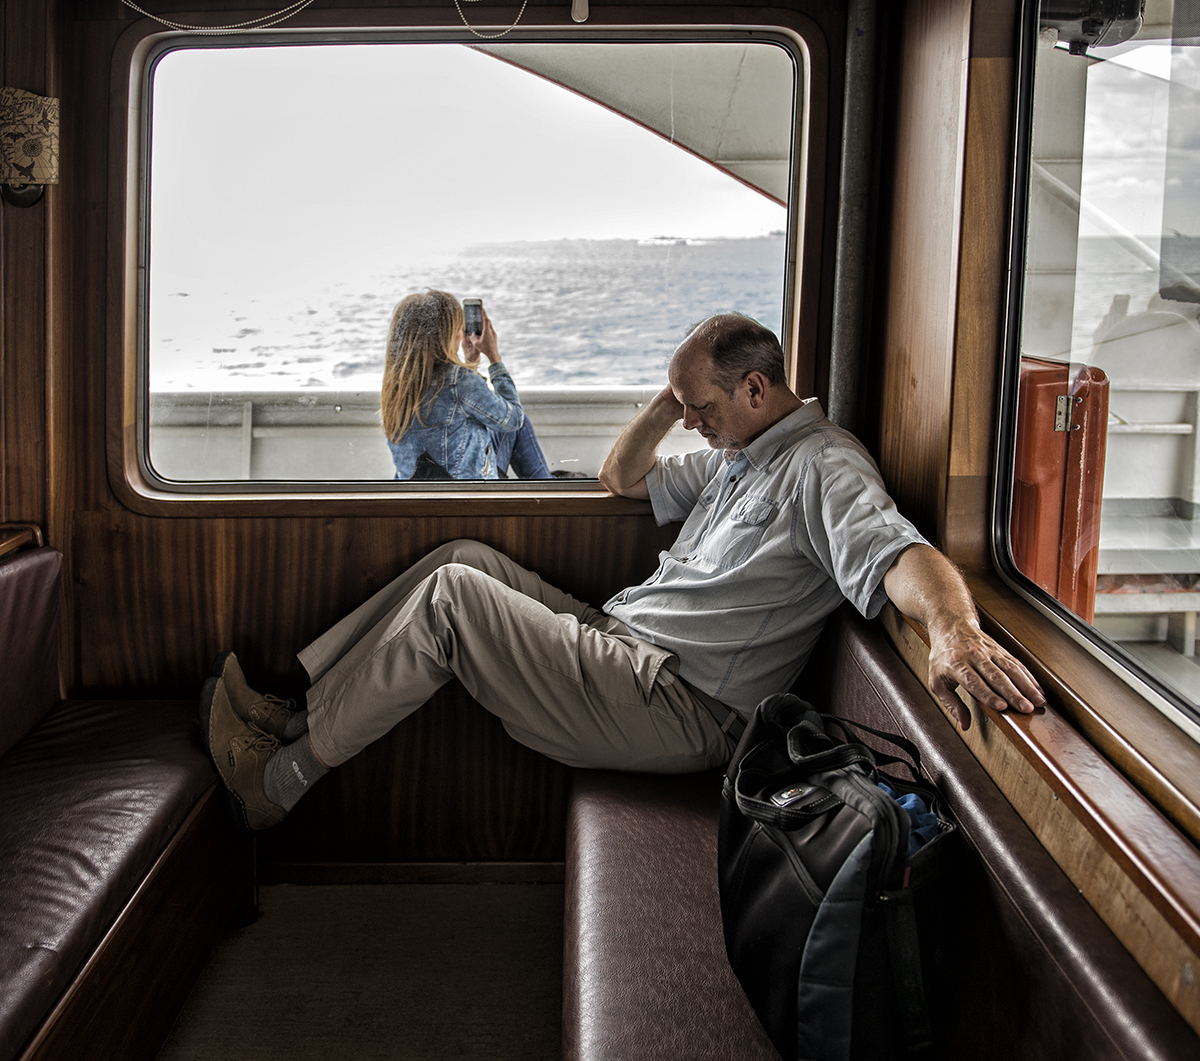 #159 —Kadıköy, Eminönü City Lines -
A ferry journey on a rainy Istanbul morning.